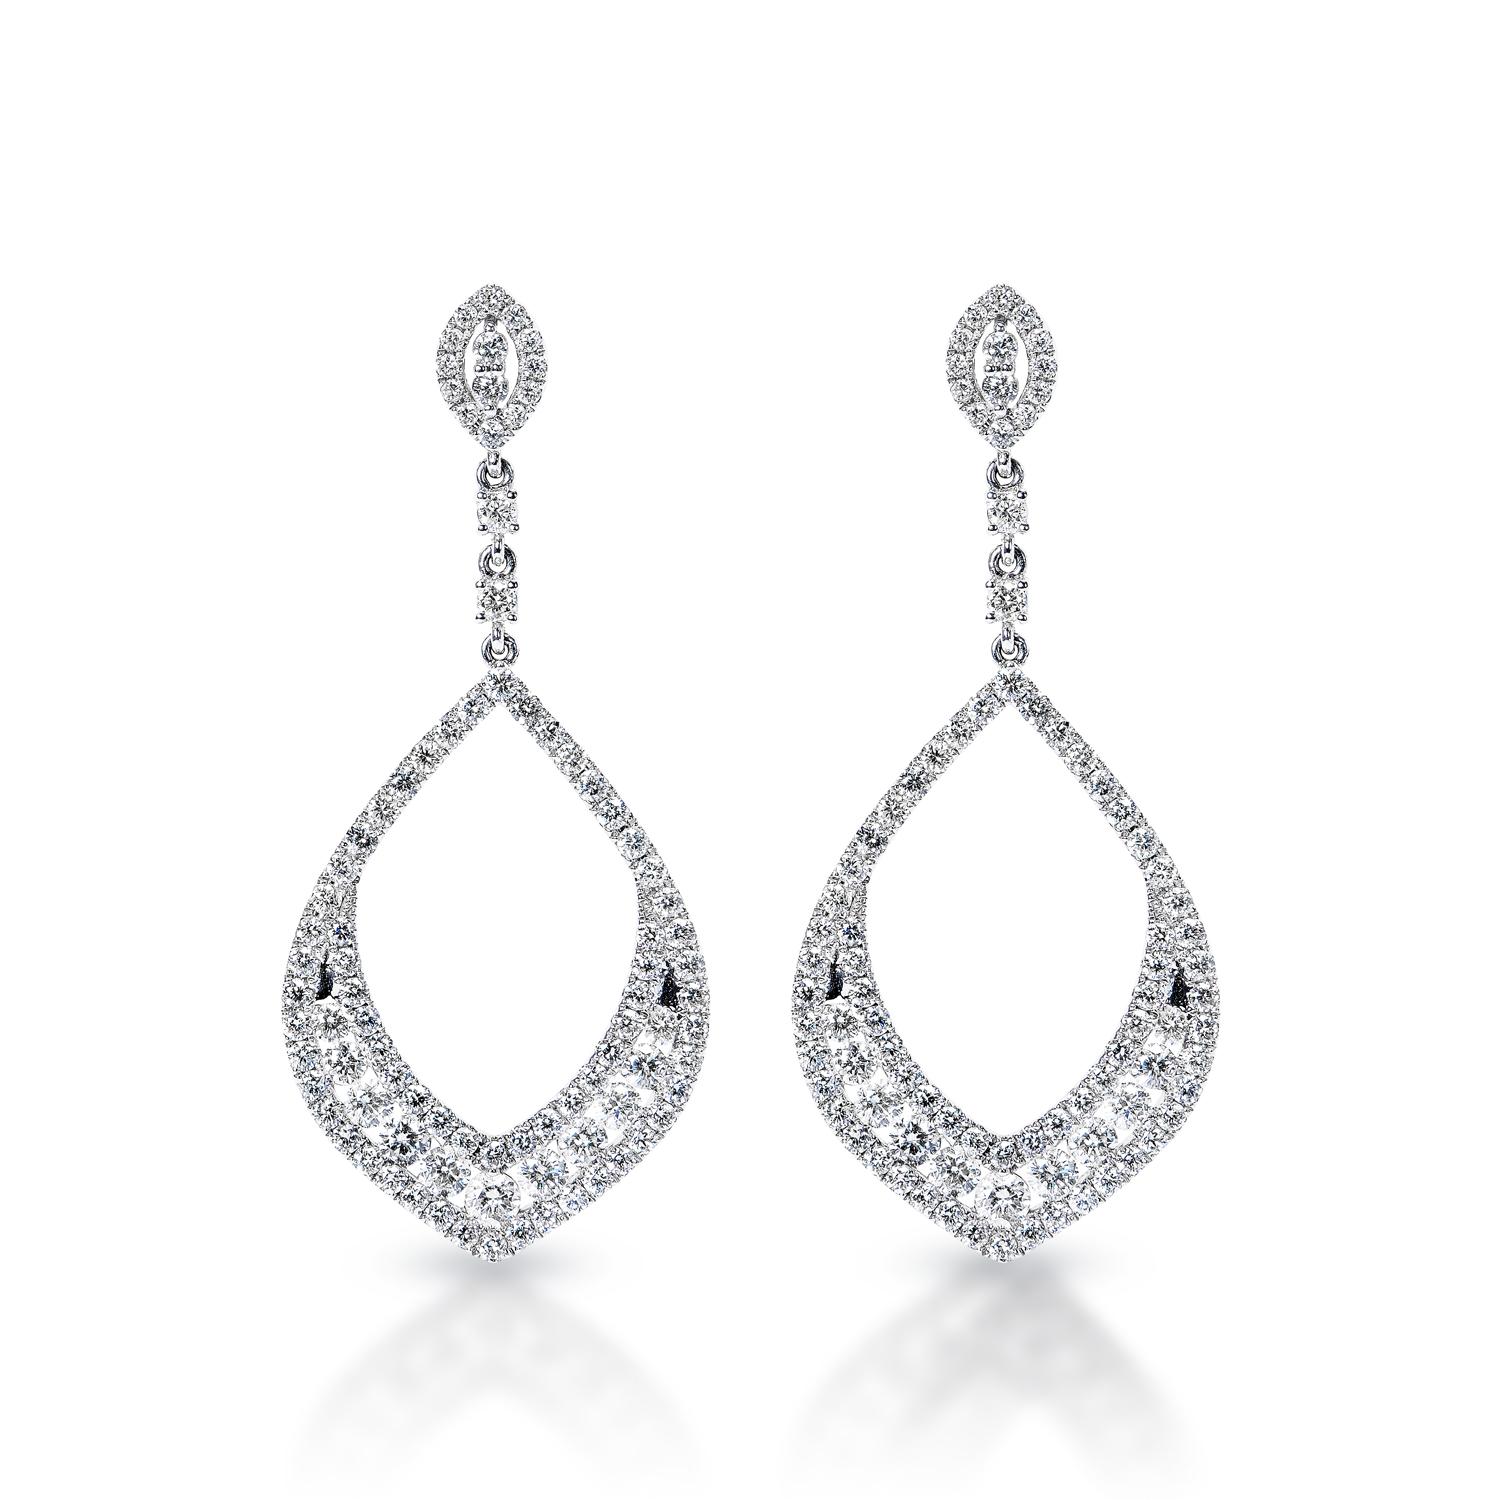 Boucles d'oreilles chandelier en diamant pour dames :

Poids en carats : 4,60 carats
Métal : or blanc 14 carats
Style : Boucles d'oreilles pendantes